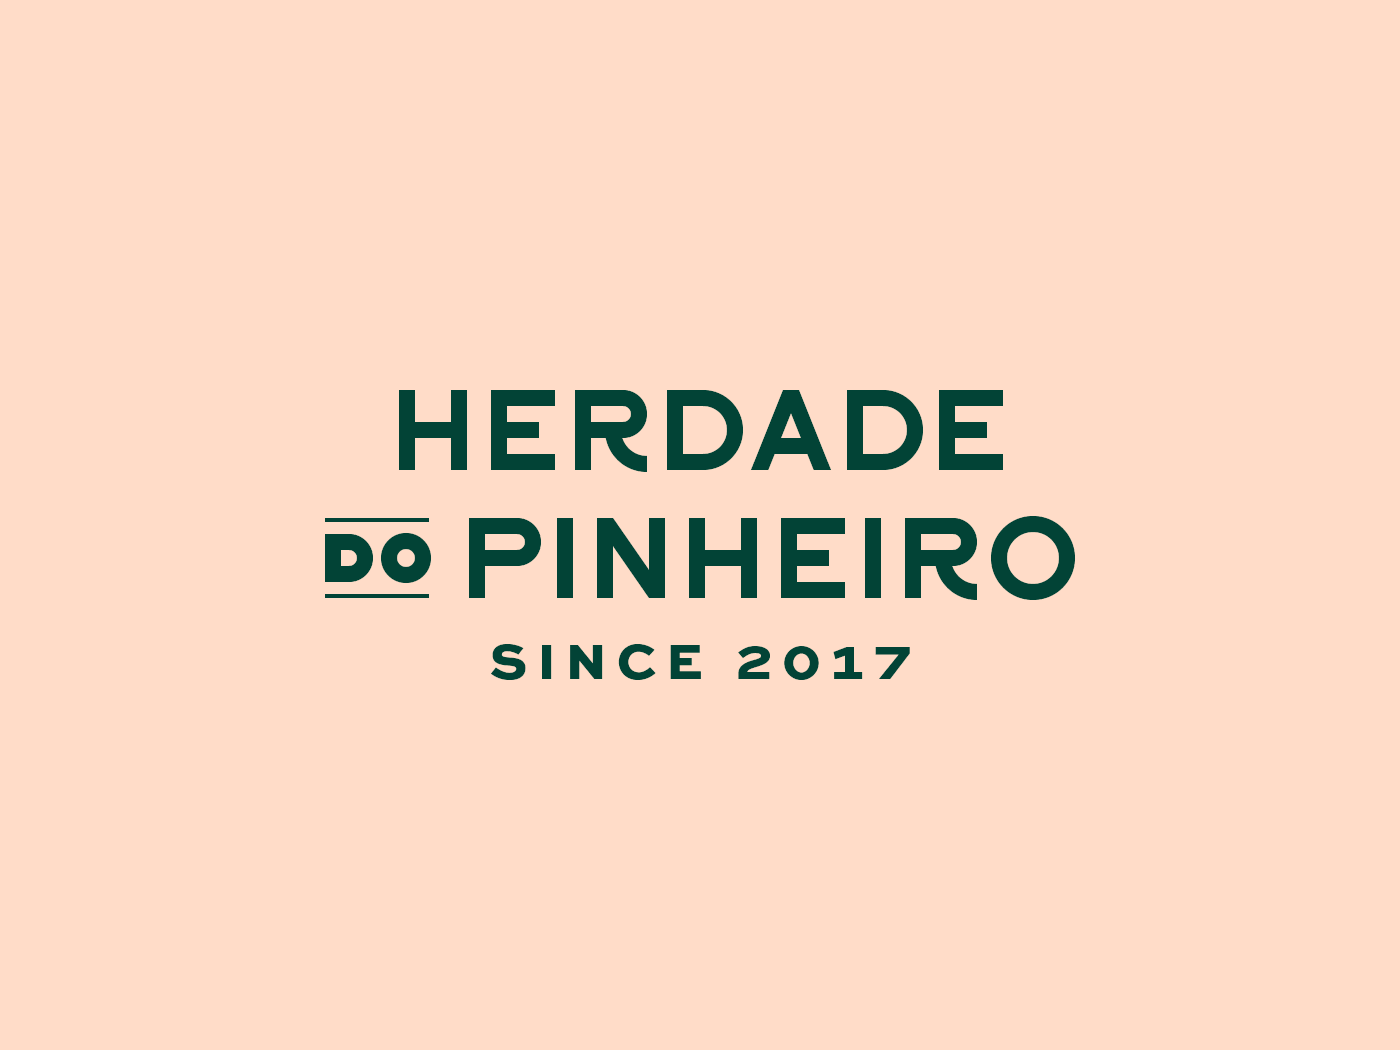 Girls in Pinheiro